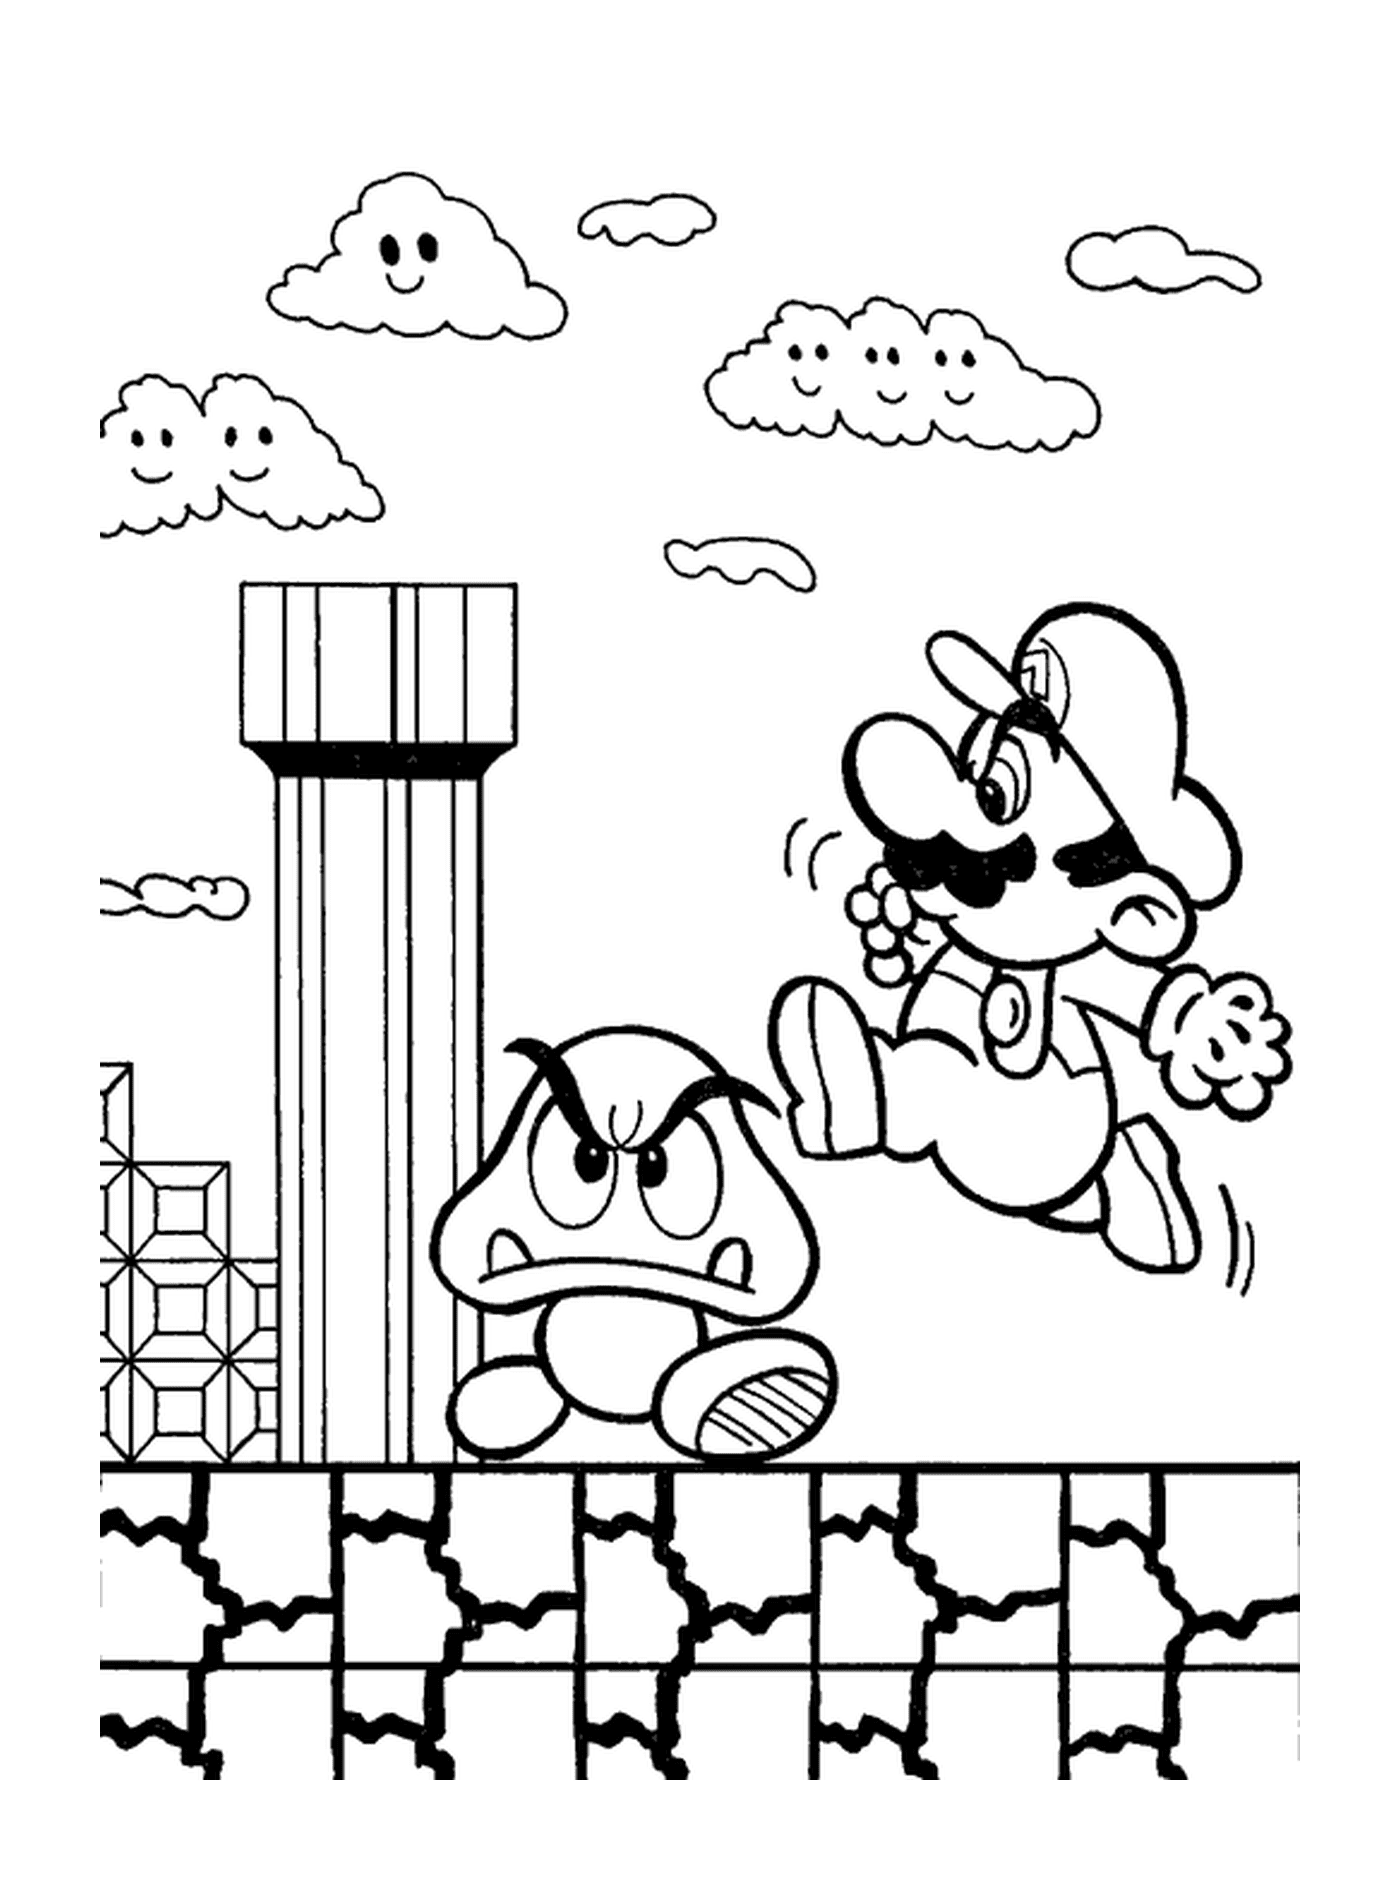  Mario jumps on a magic mushroom 